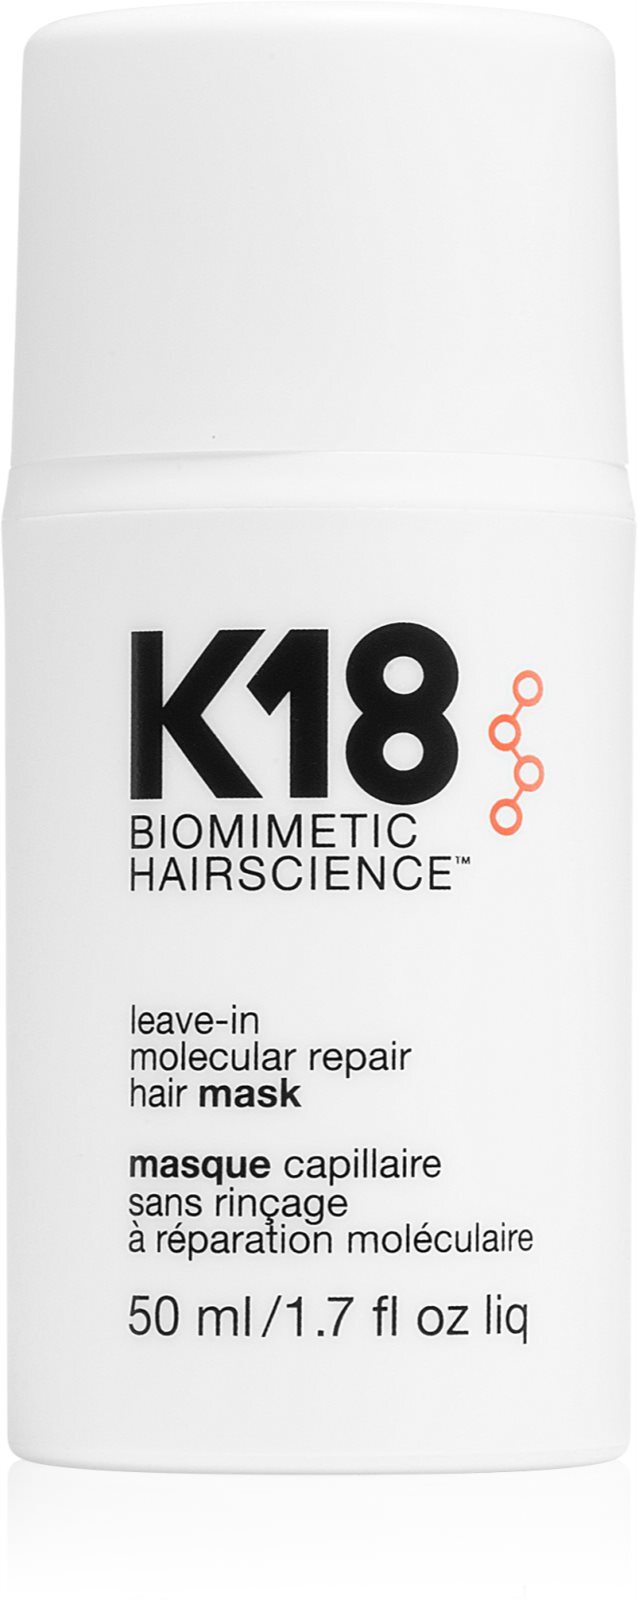 Маска к18 для волос. Treatment - для молекулярного восстановления волос. Маска для волос молекулярное восстановление